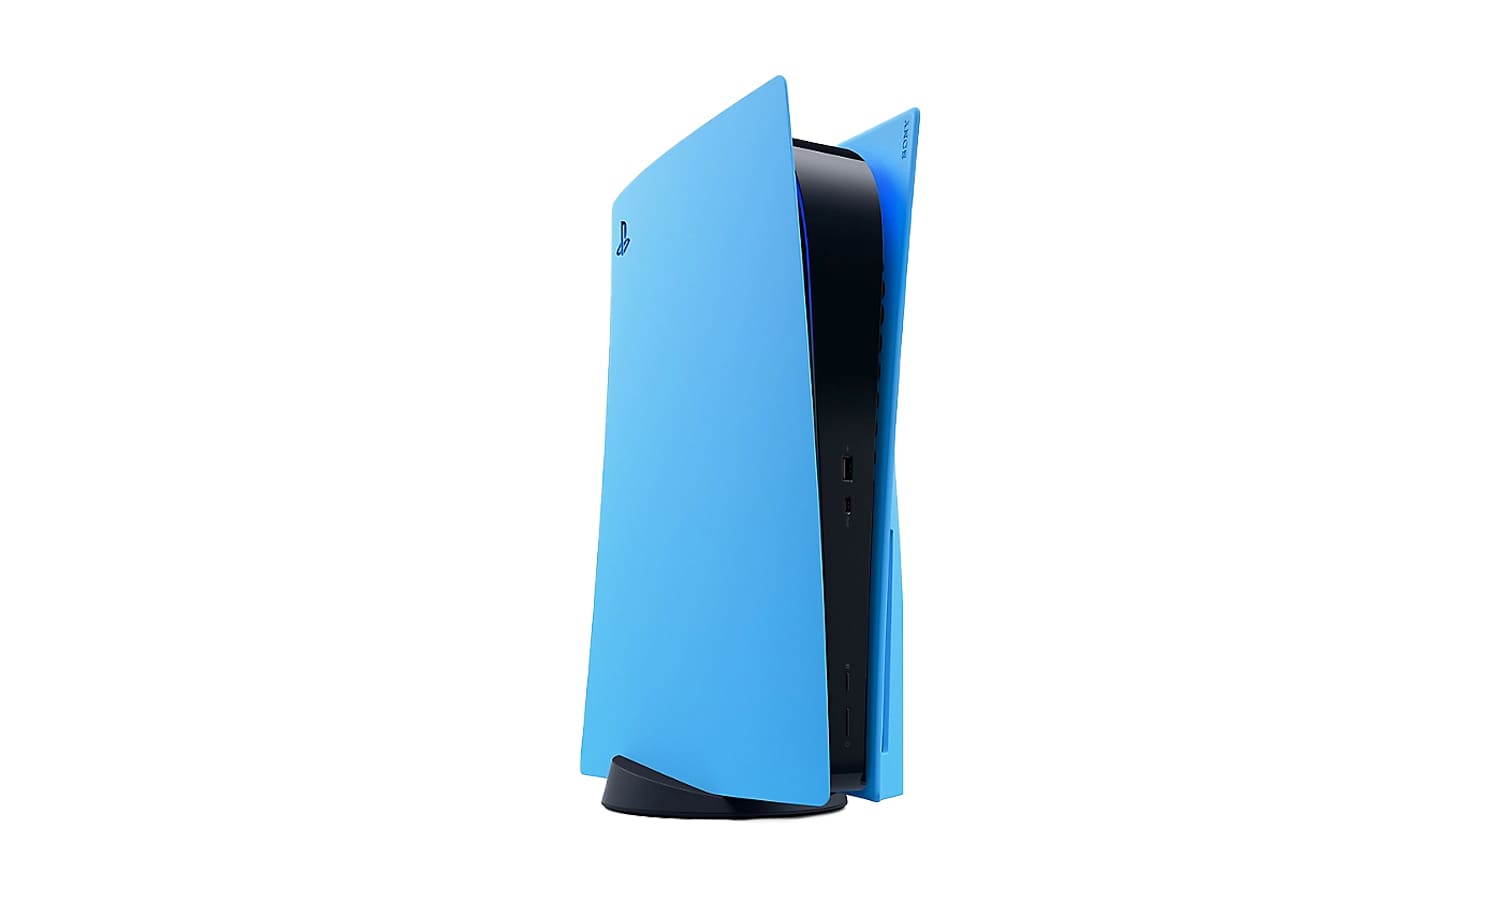 PlayStation 5 in Starlight Blue.